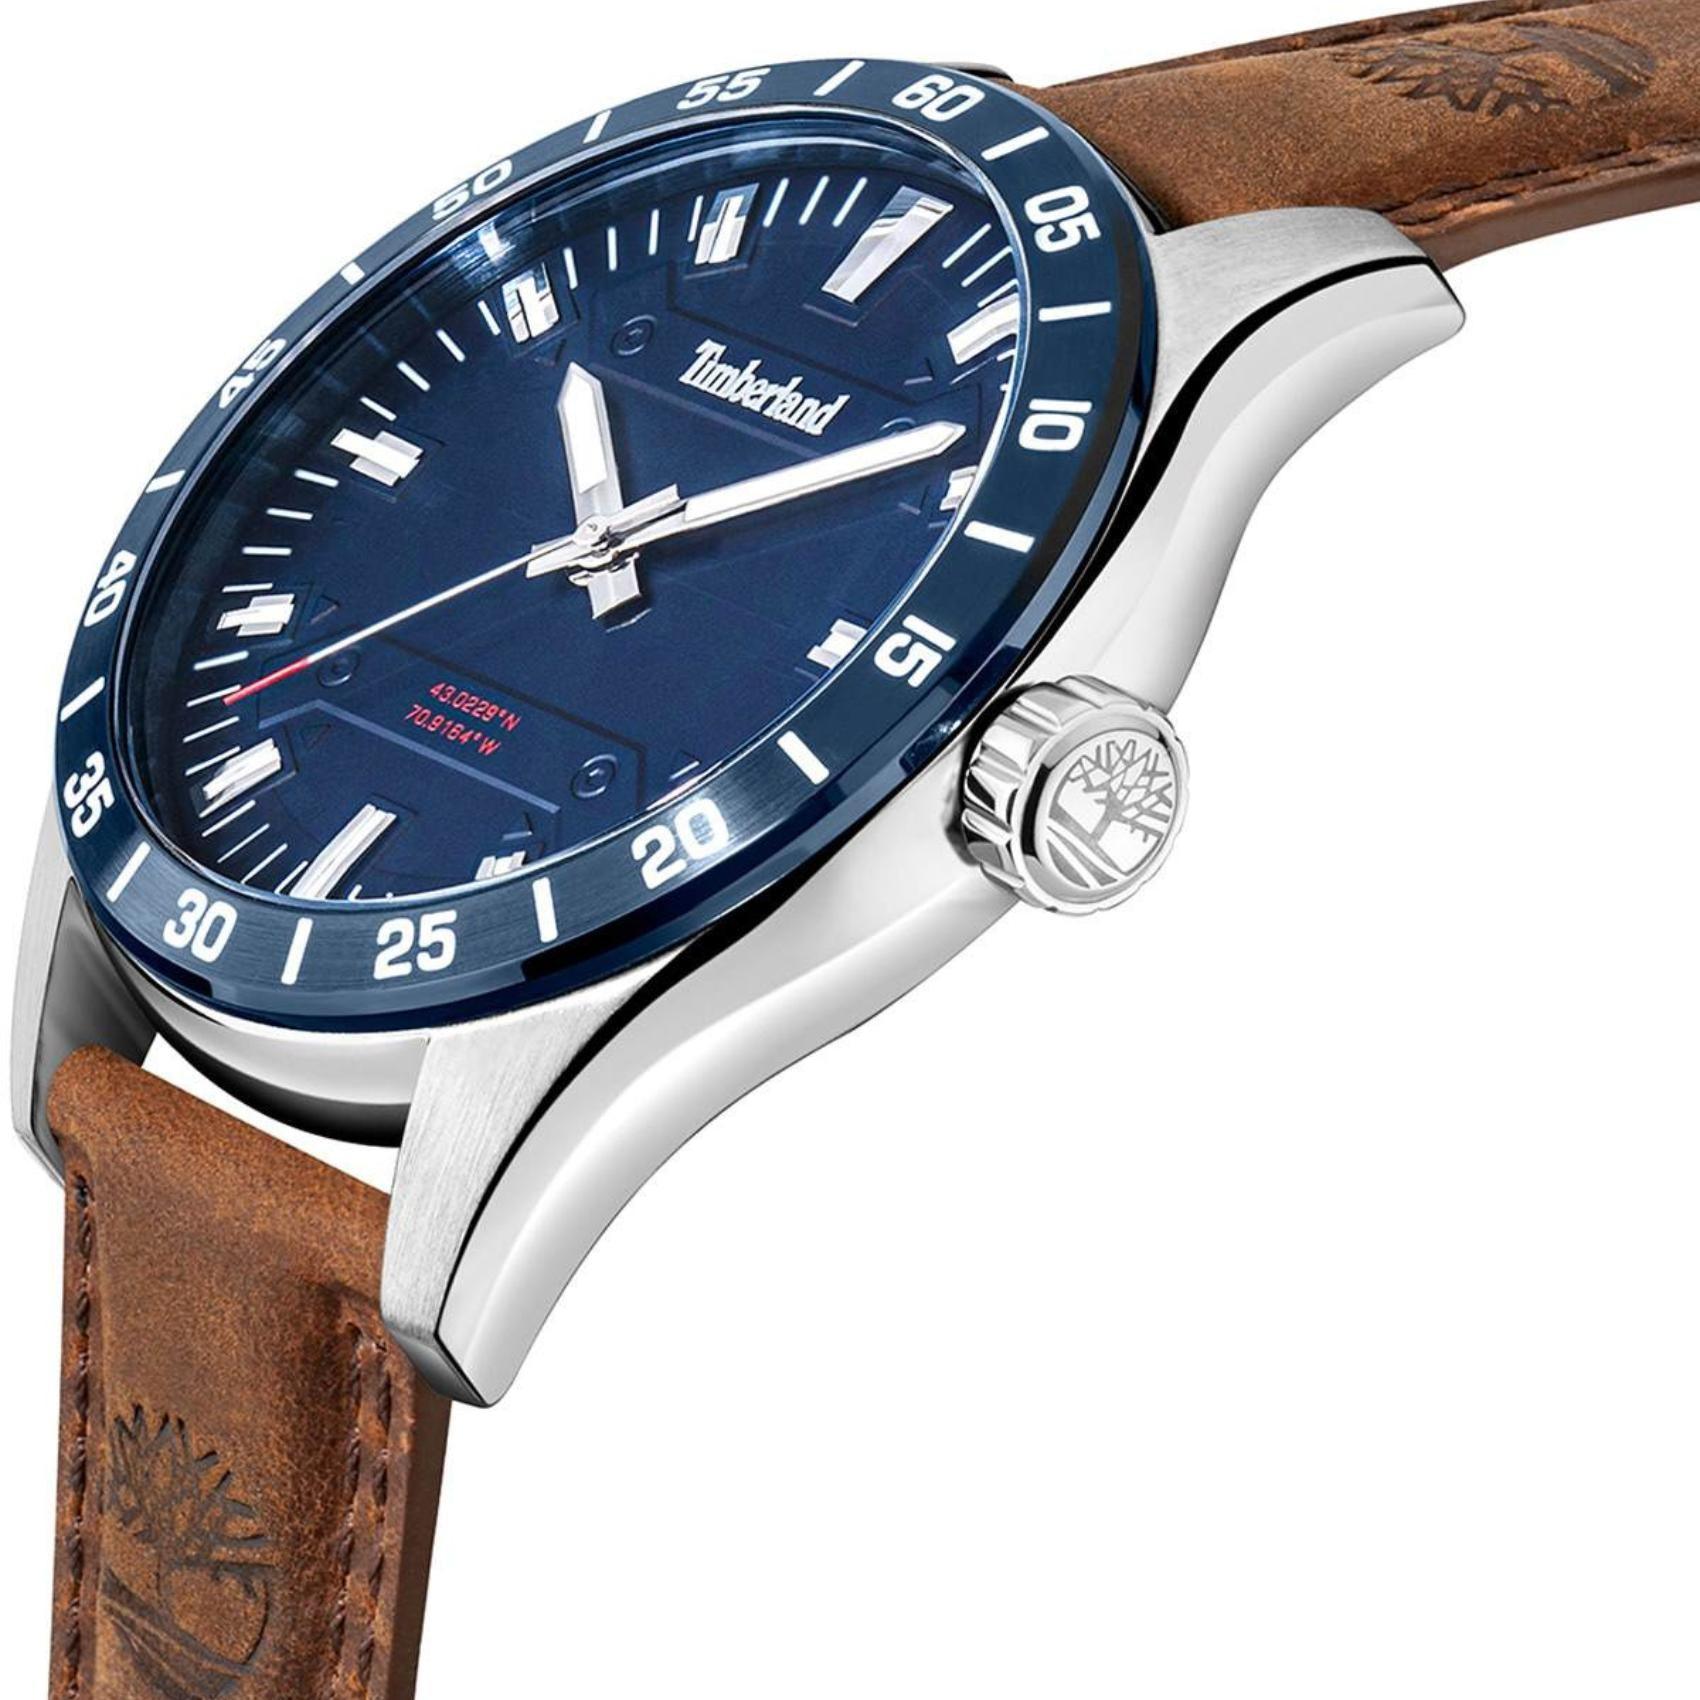 Αντρικό ρολόι Timberland Calverton TDWGA2201204 με καφέ δερμάτινο λουράκι και μπλε καντράν διαμέτρου 46mm.